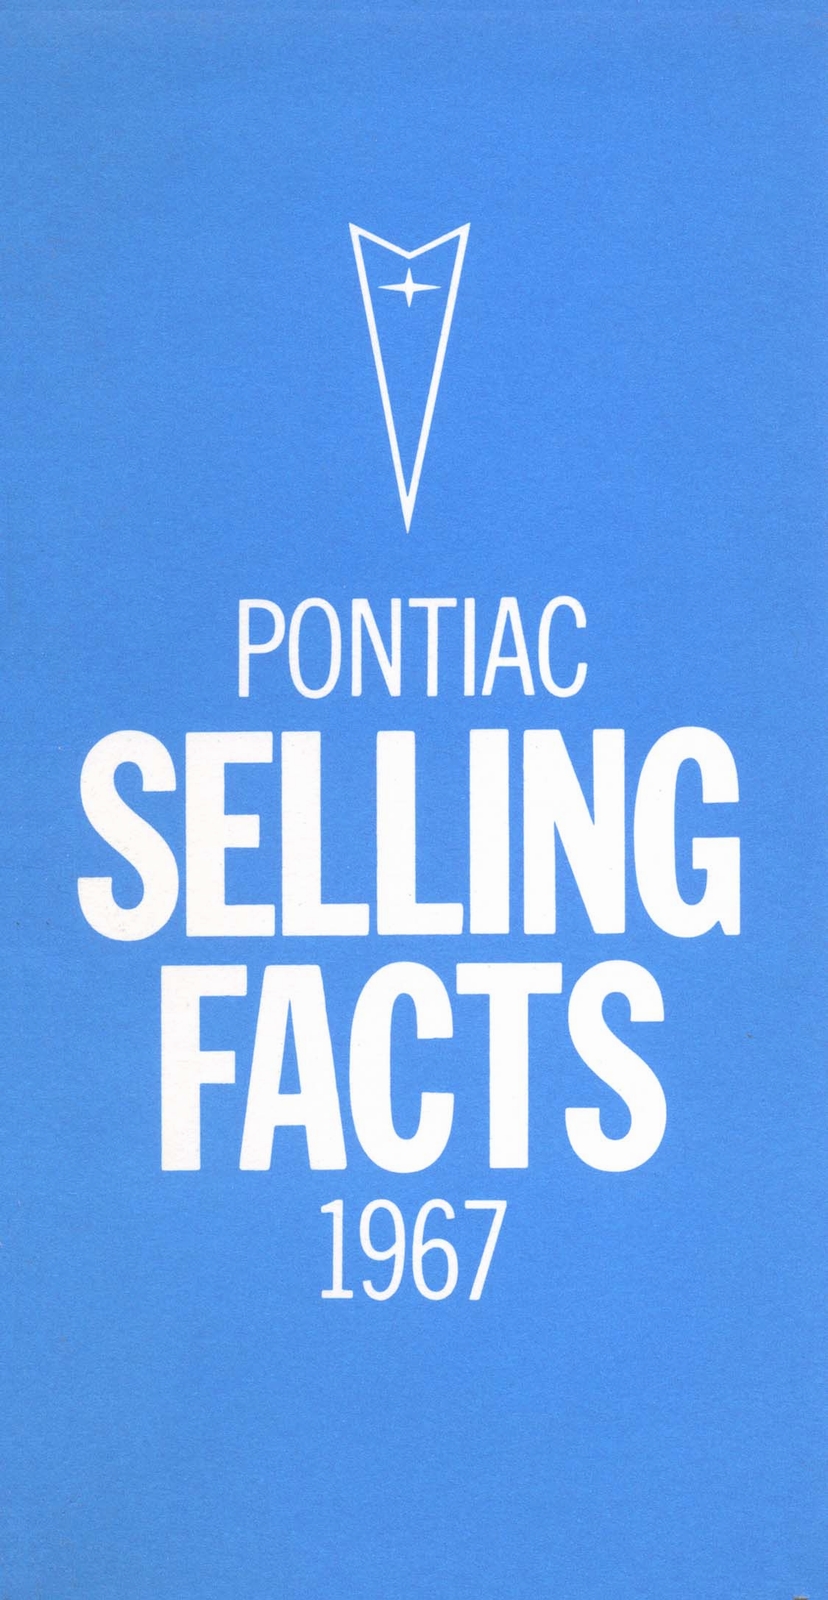 n_1967 Pontiac Selling Facts-00.jpg